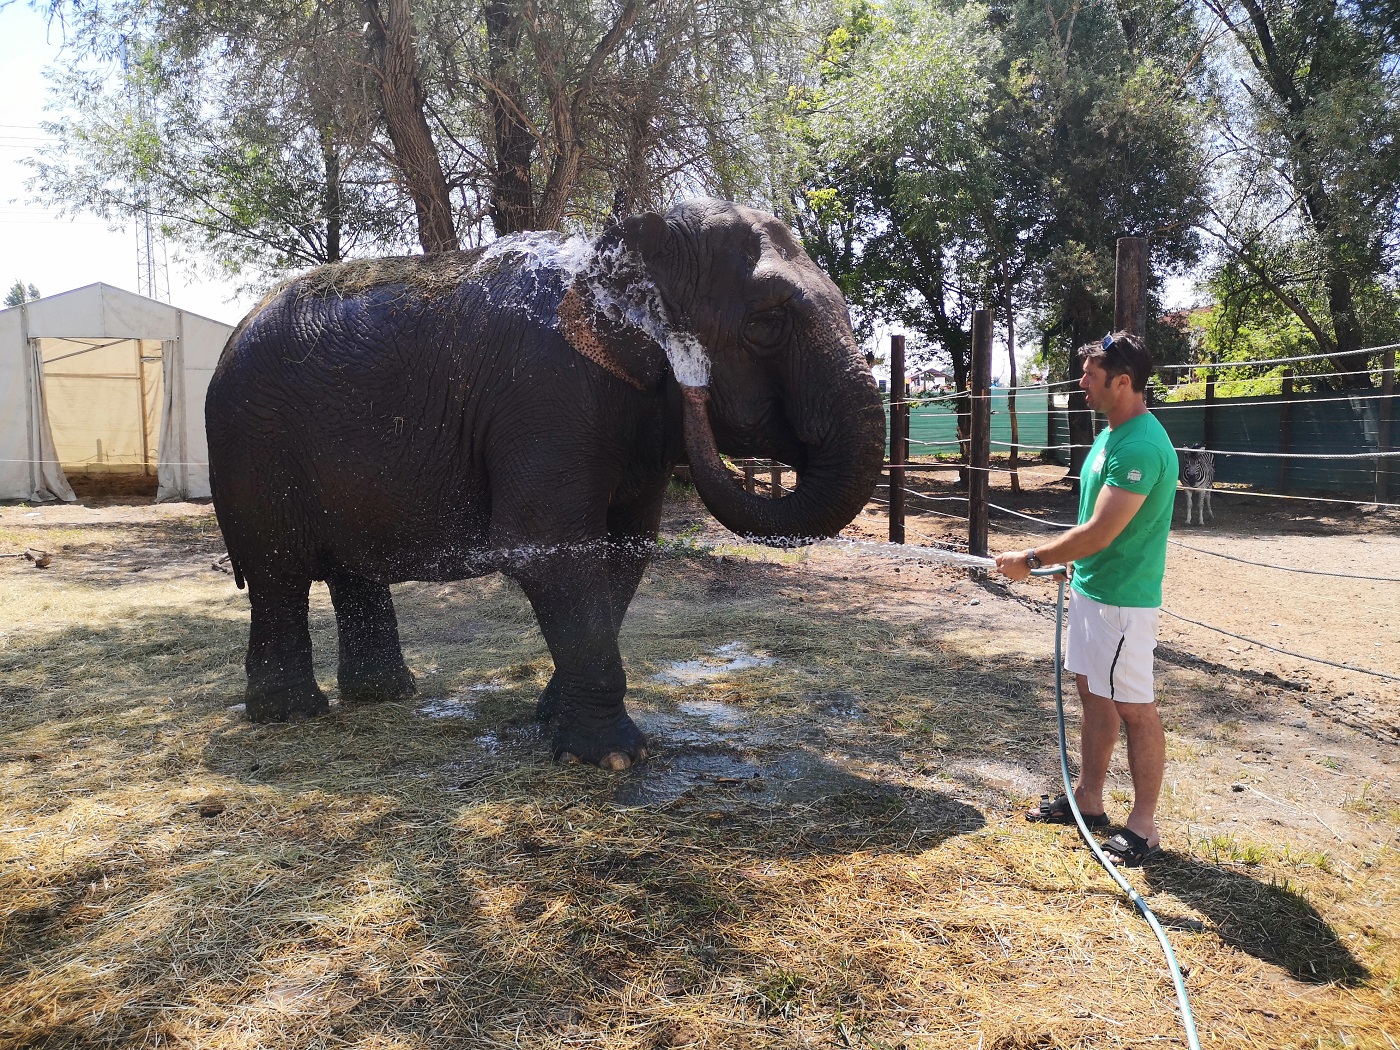 Cirkuszi élet közelről Zamárdiban – minden nap megfürdetik Szandra elefántot